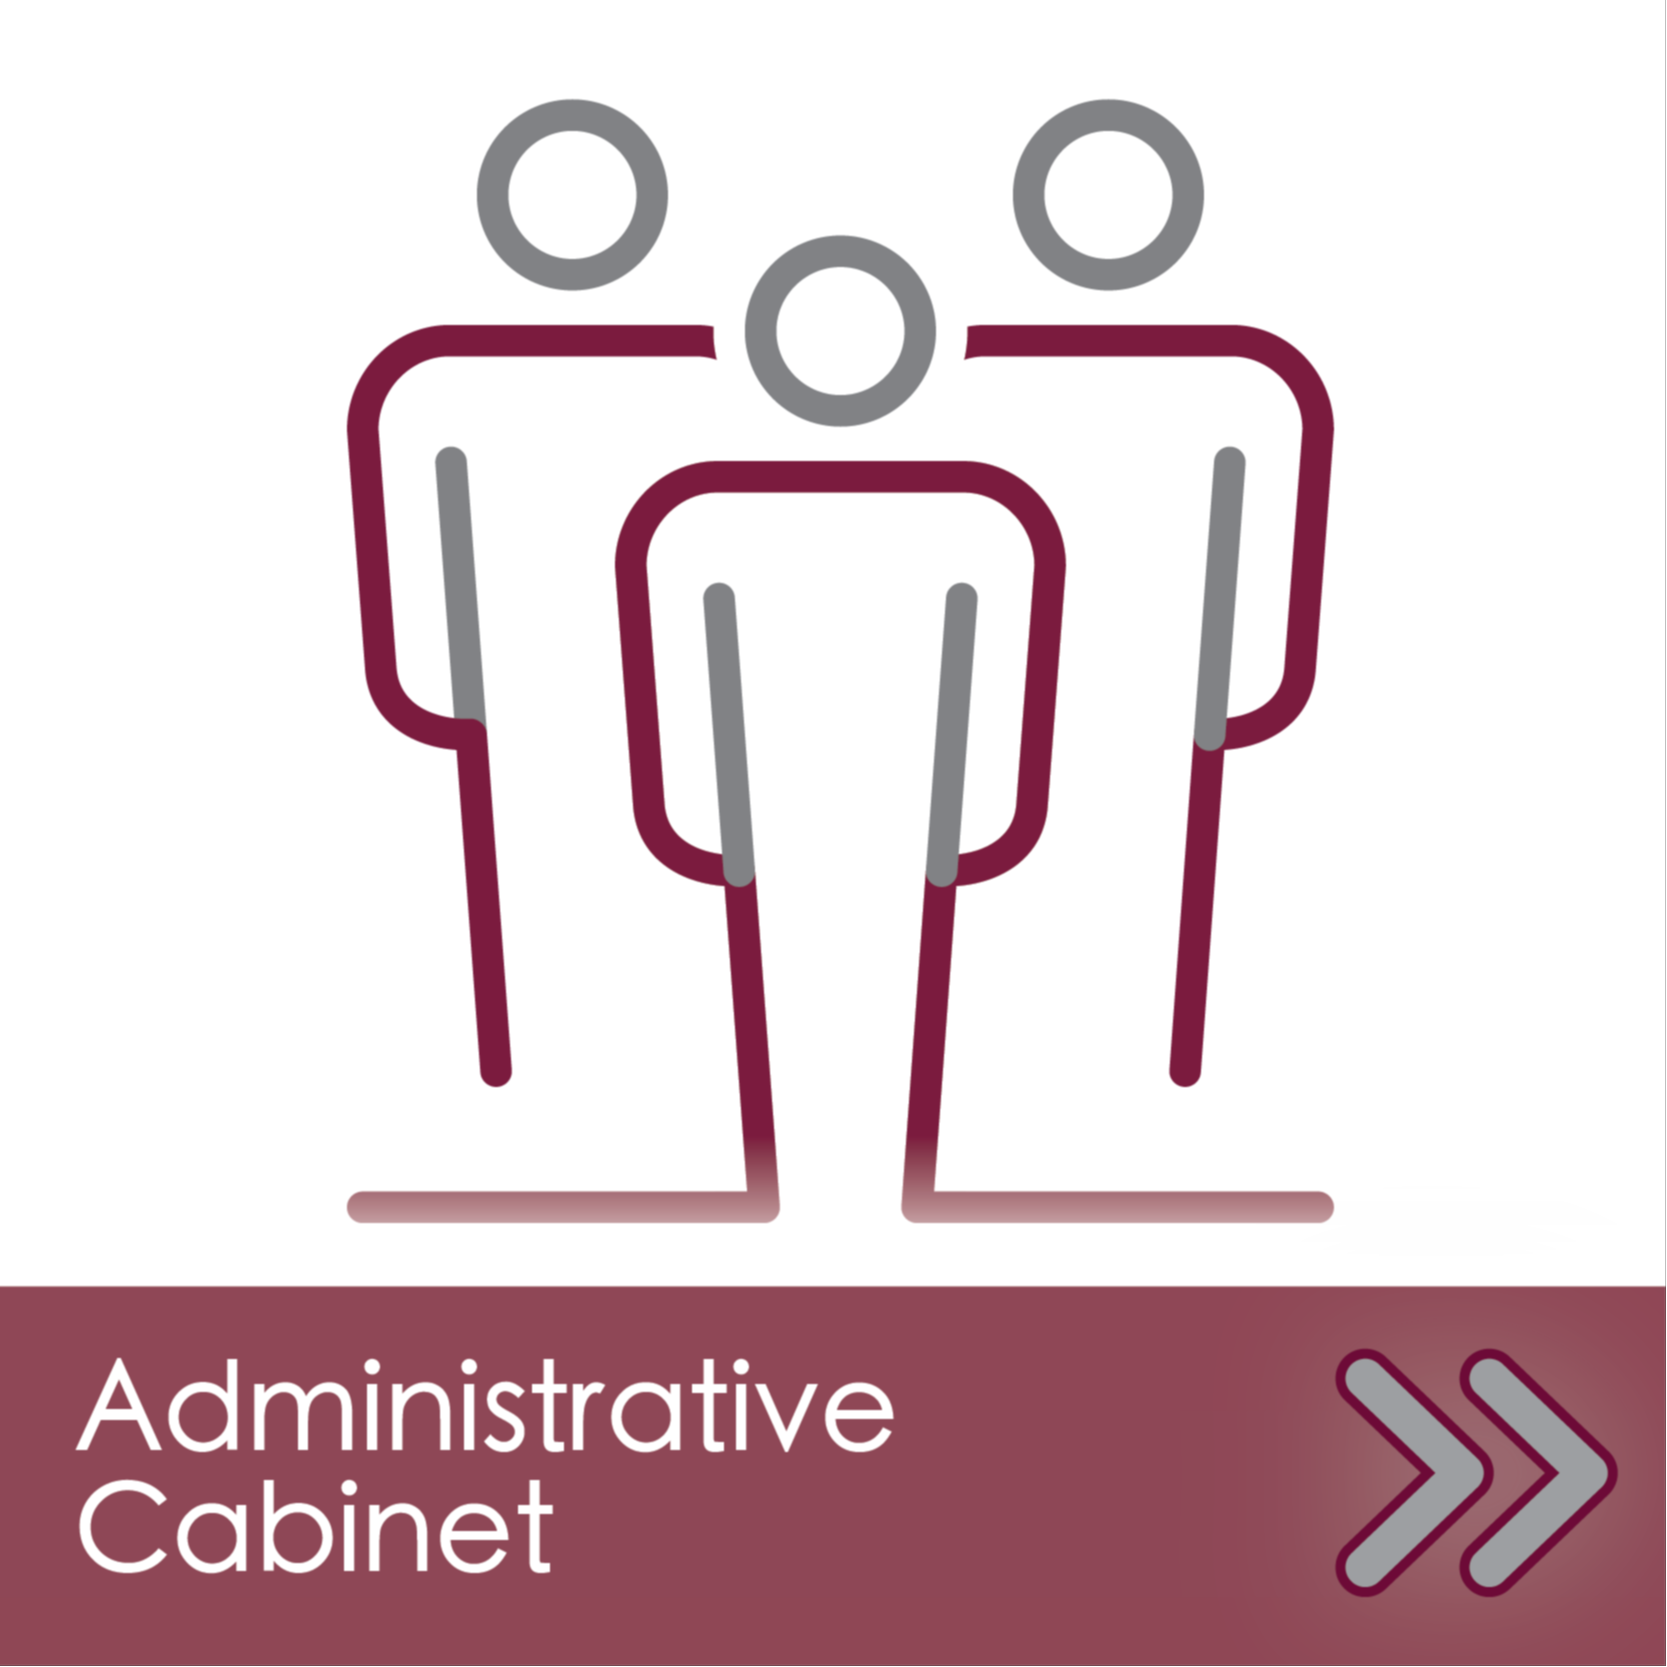 Administrative Cabinet Navigation Link